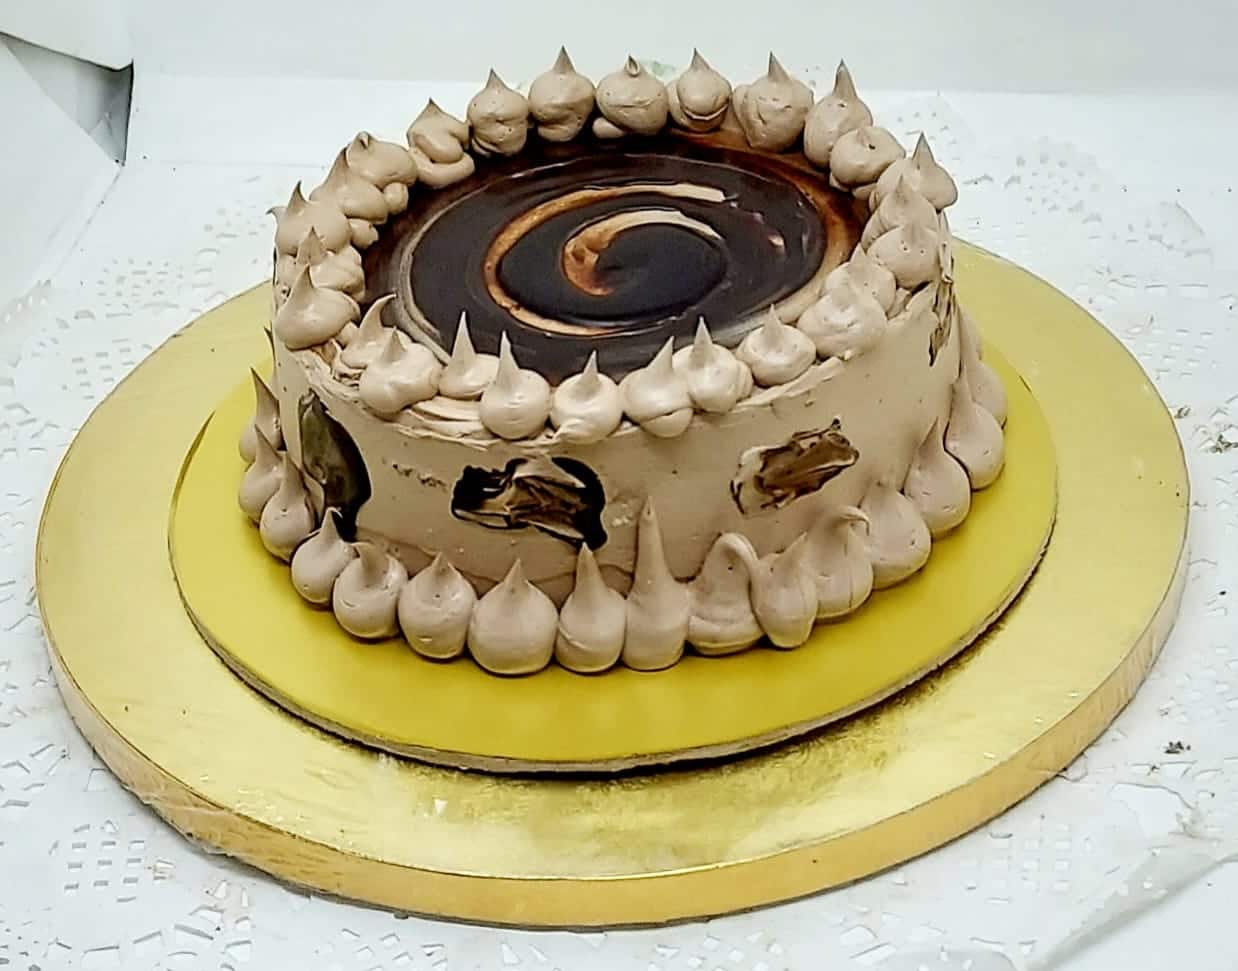 Birthday Cakes - CAKES TO YOU